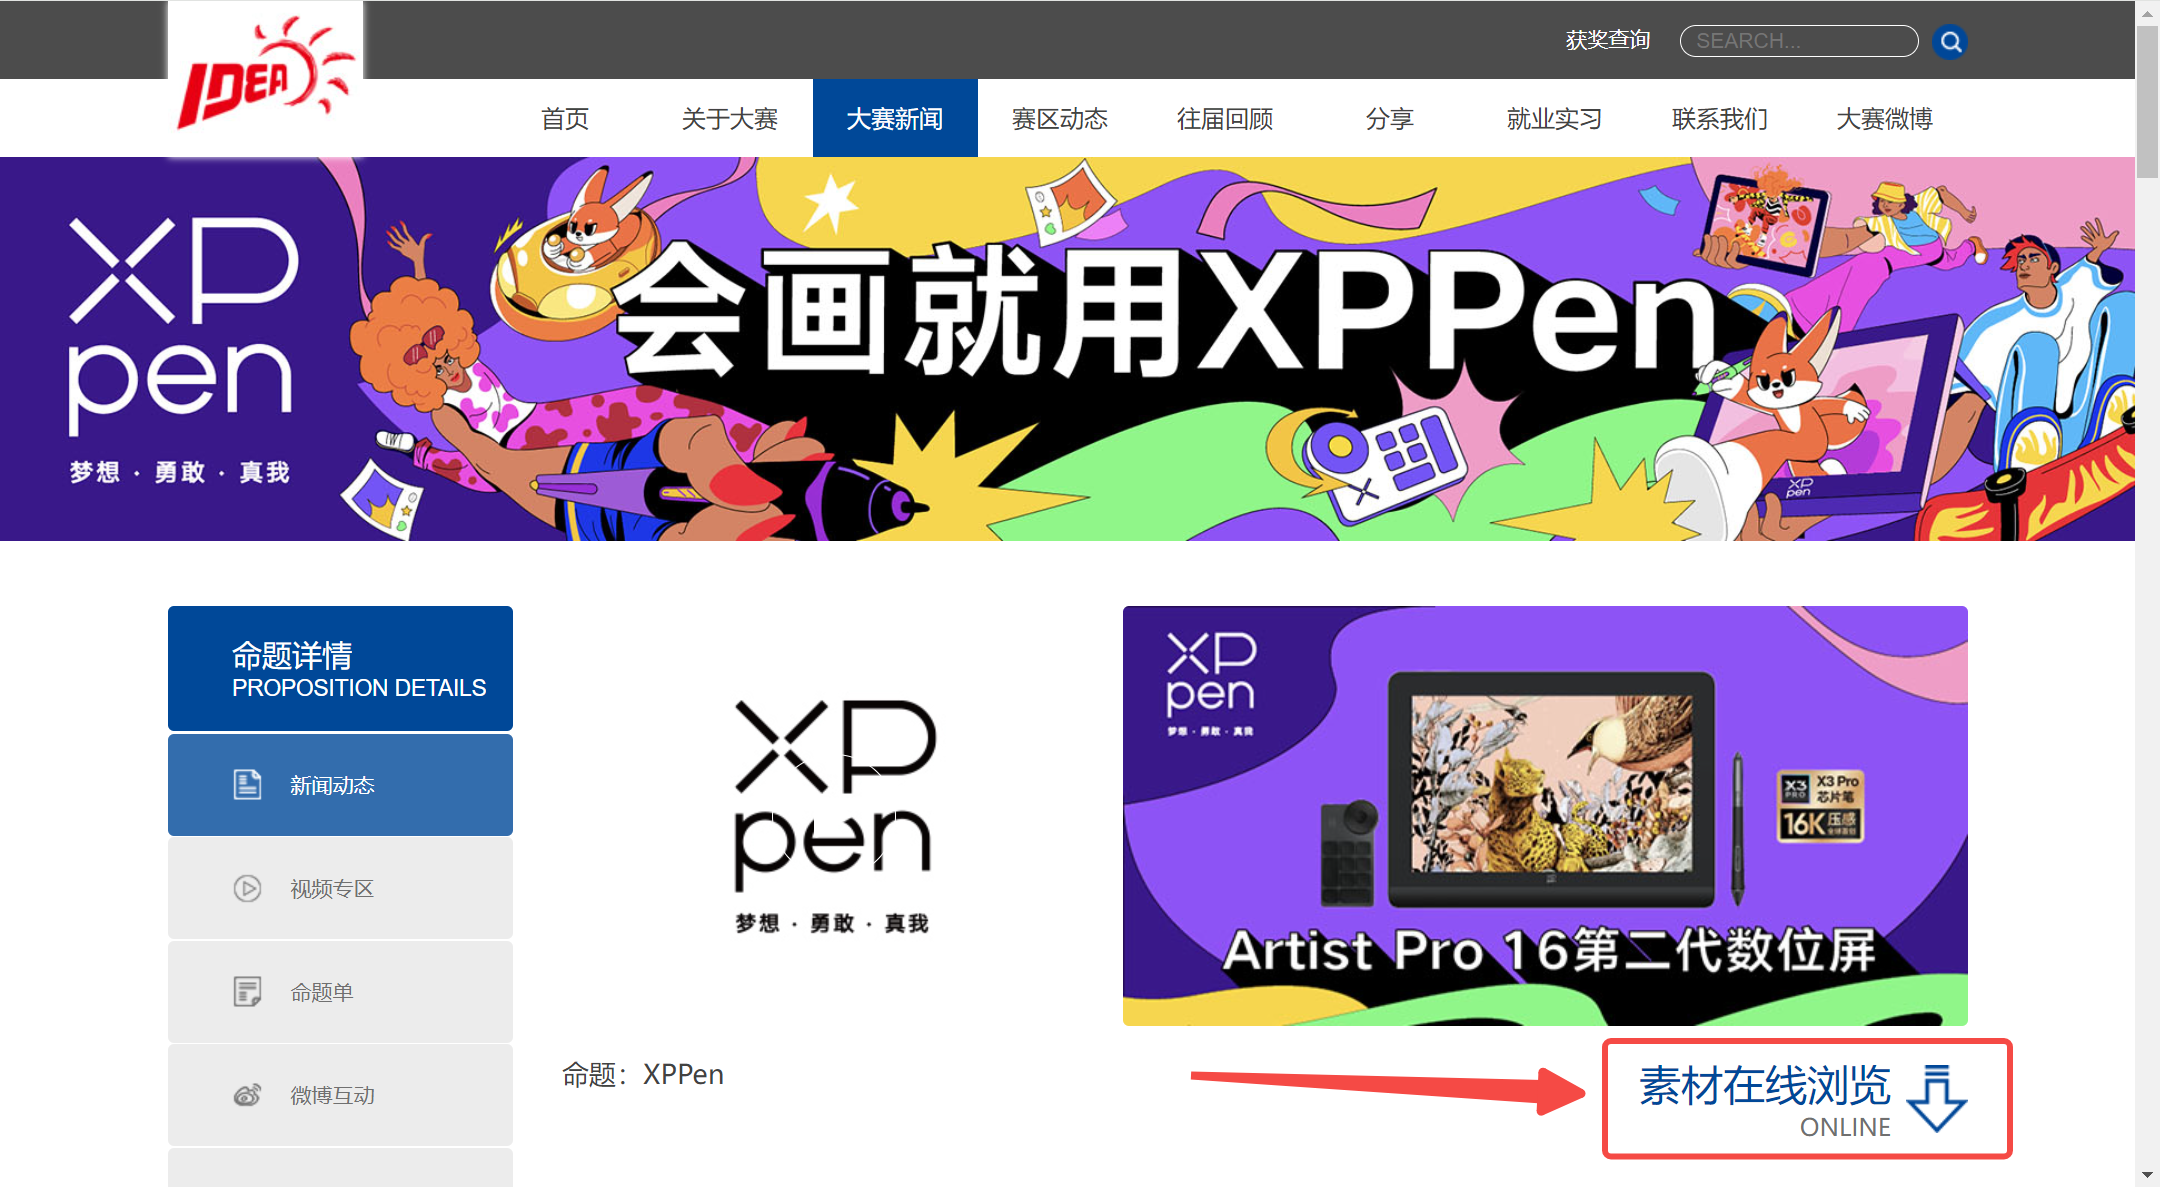 大广赛命题XPPen的策略单